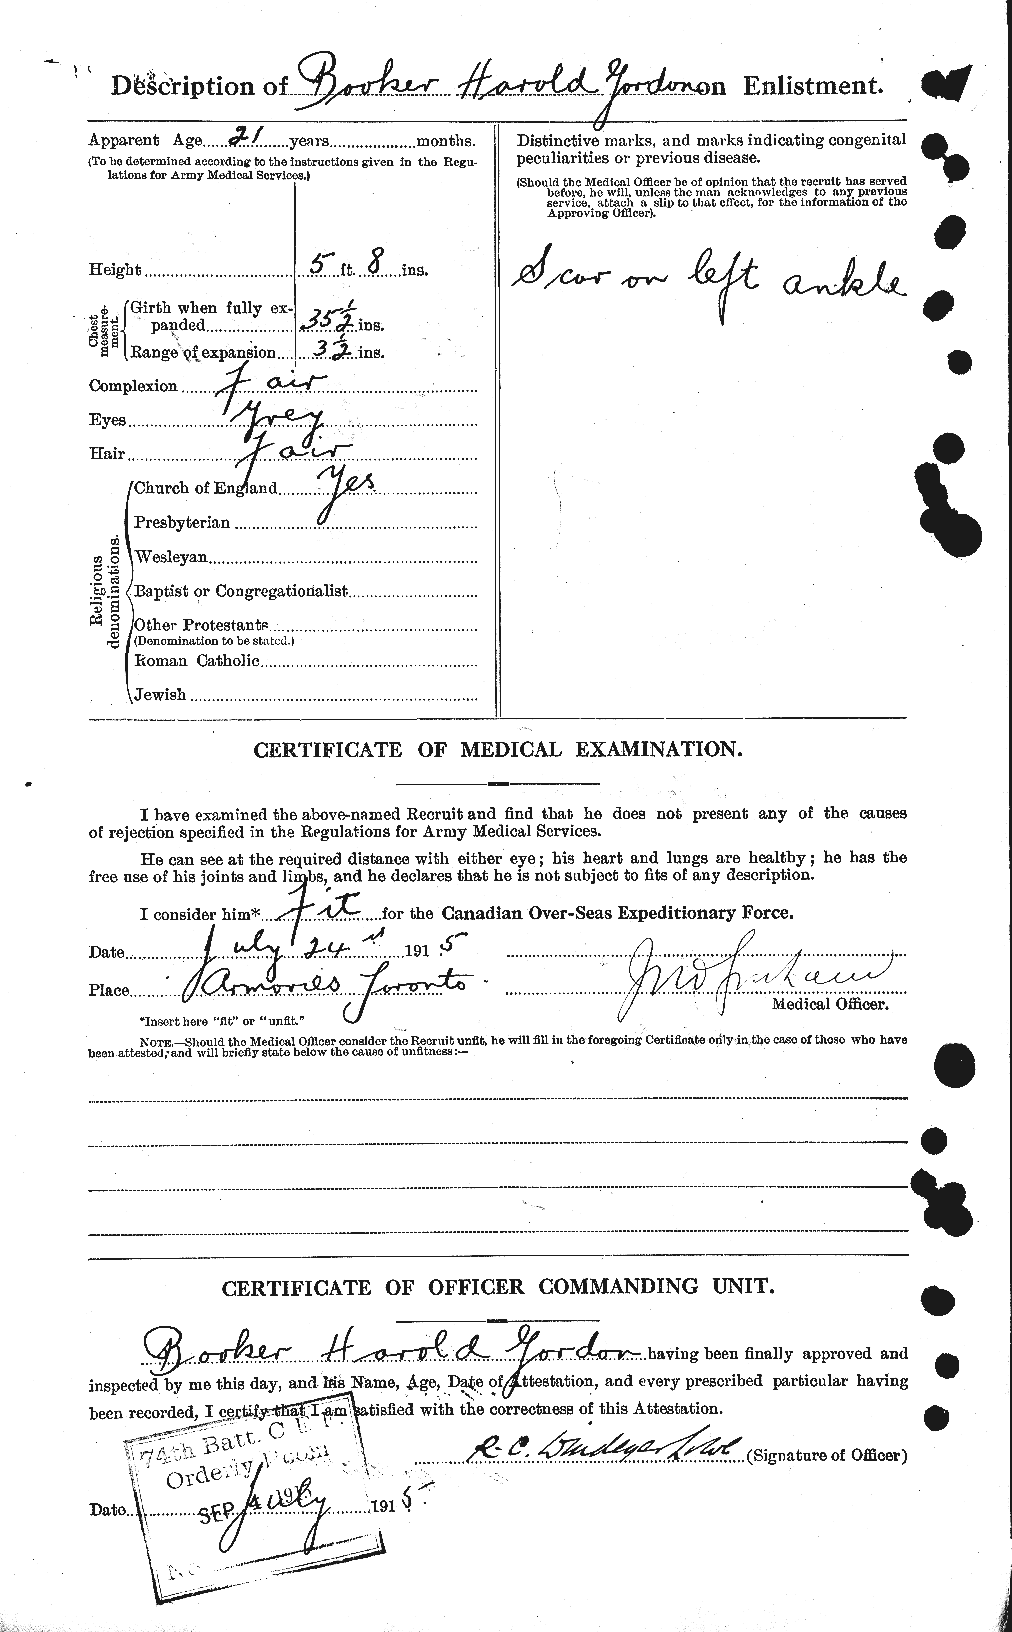 Dossiers du Personnel de la Première Guerre mondiale - CEC 251248b